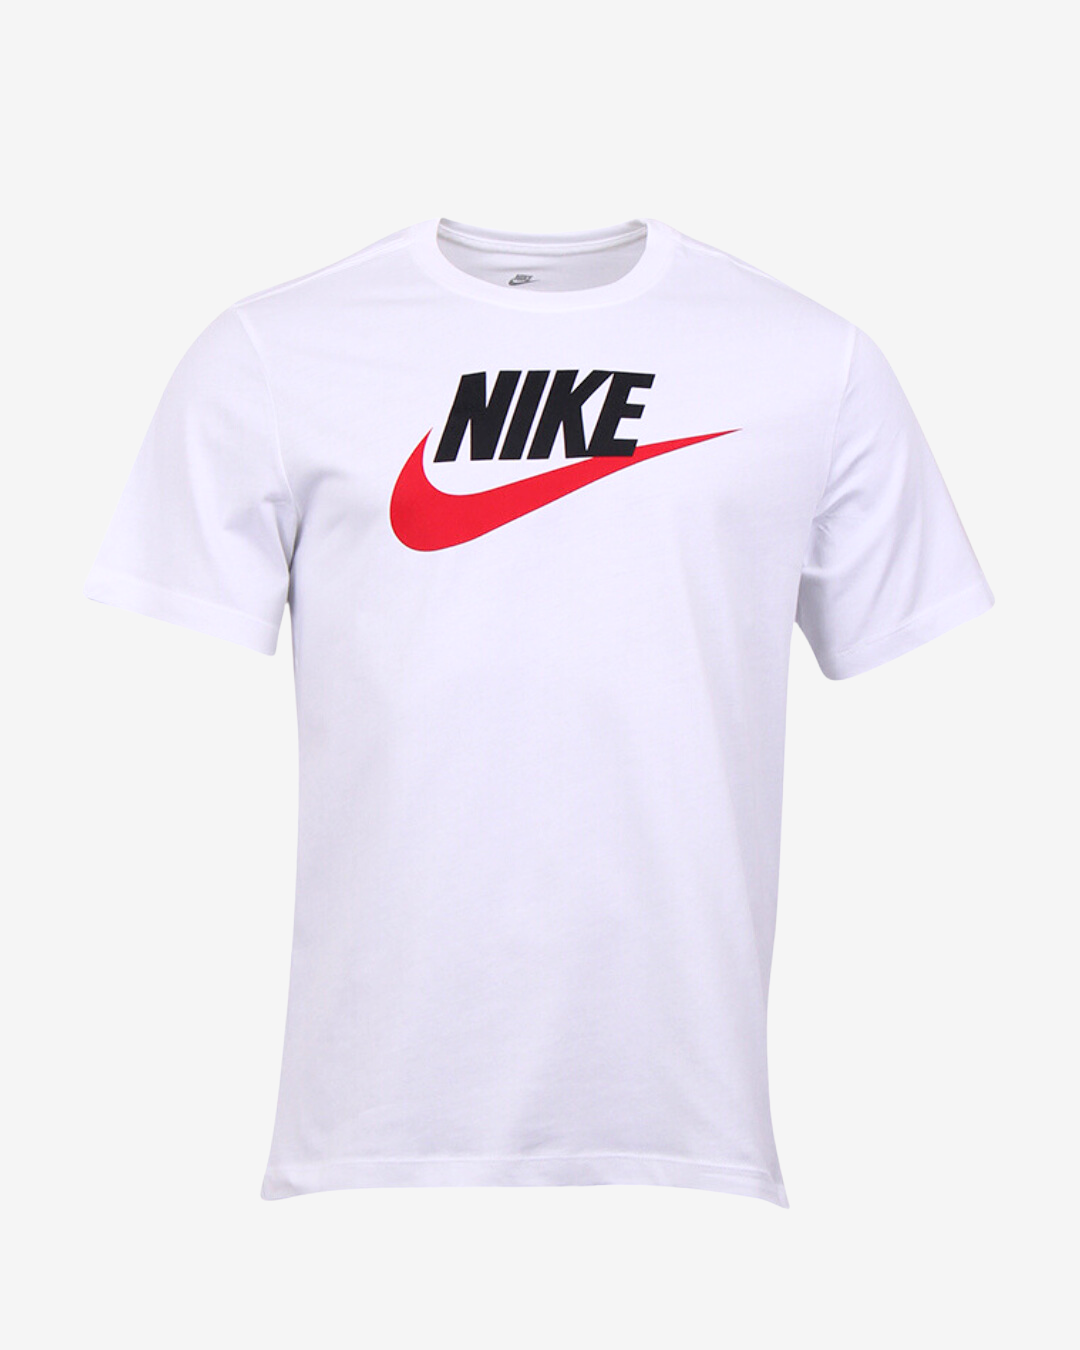 Nike Icon futura t-shirt - Hvid / Rød - Str. S - Modish.dk